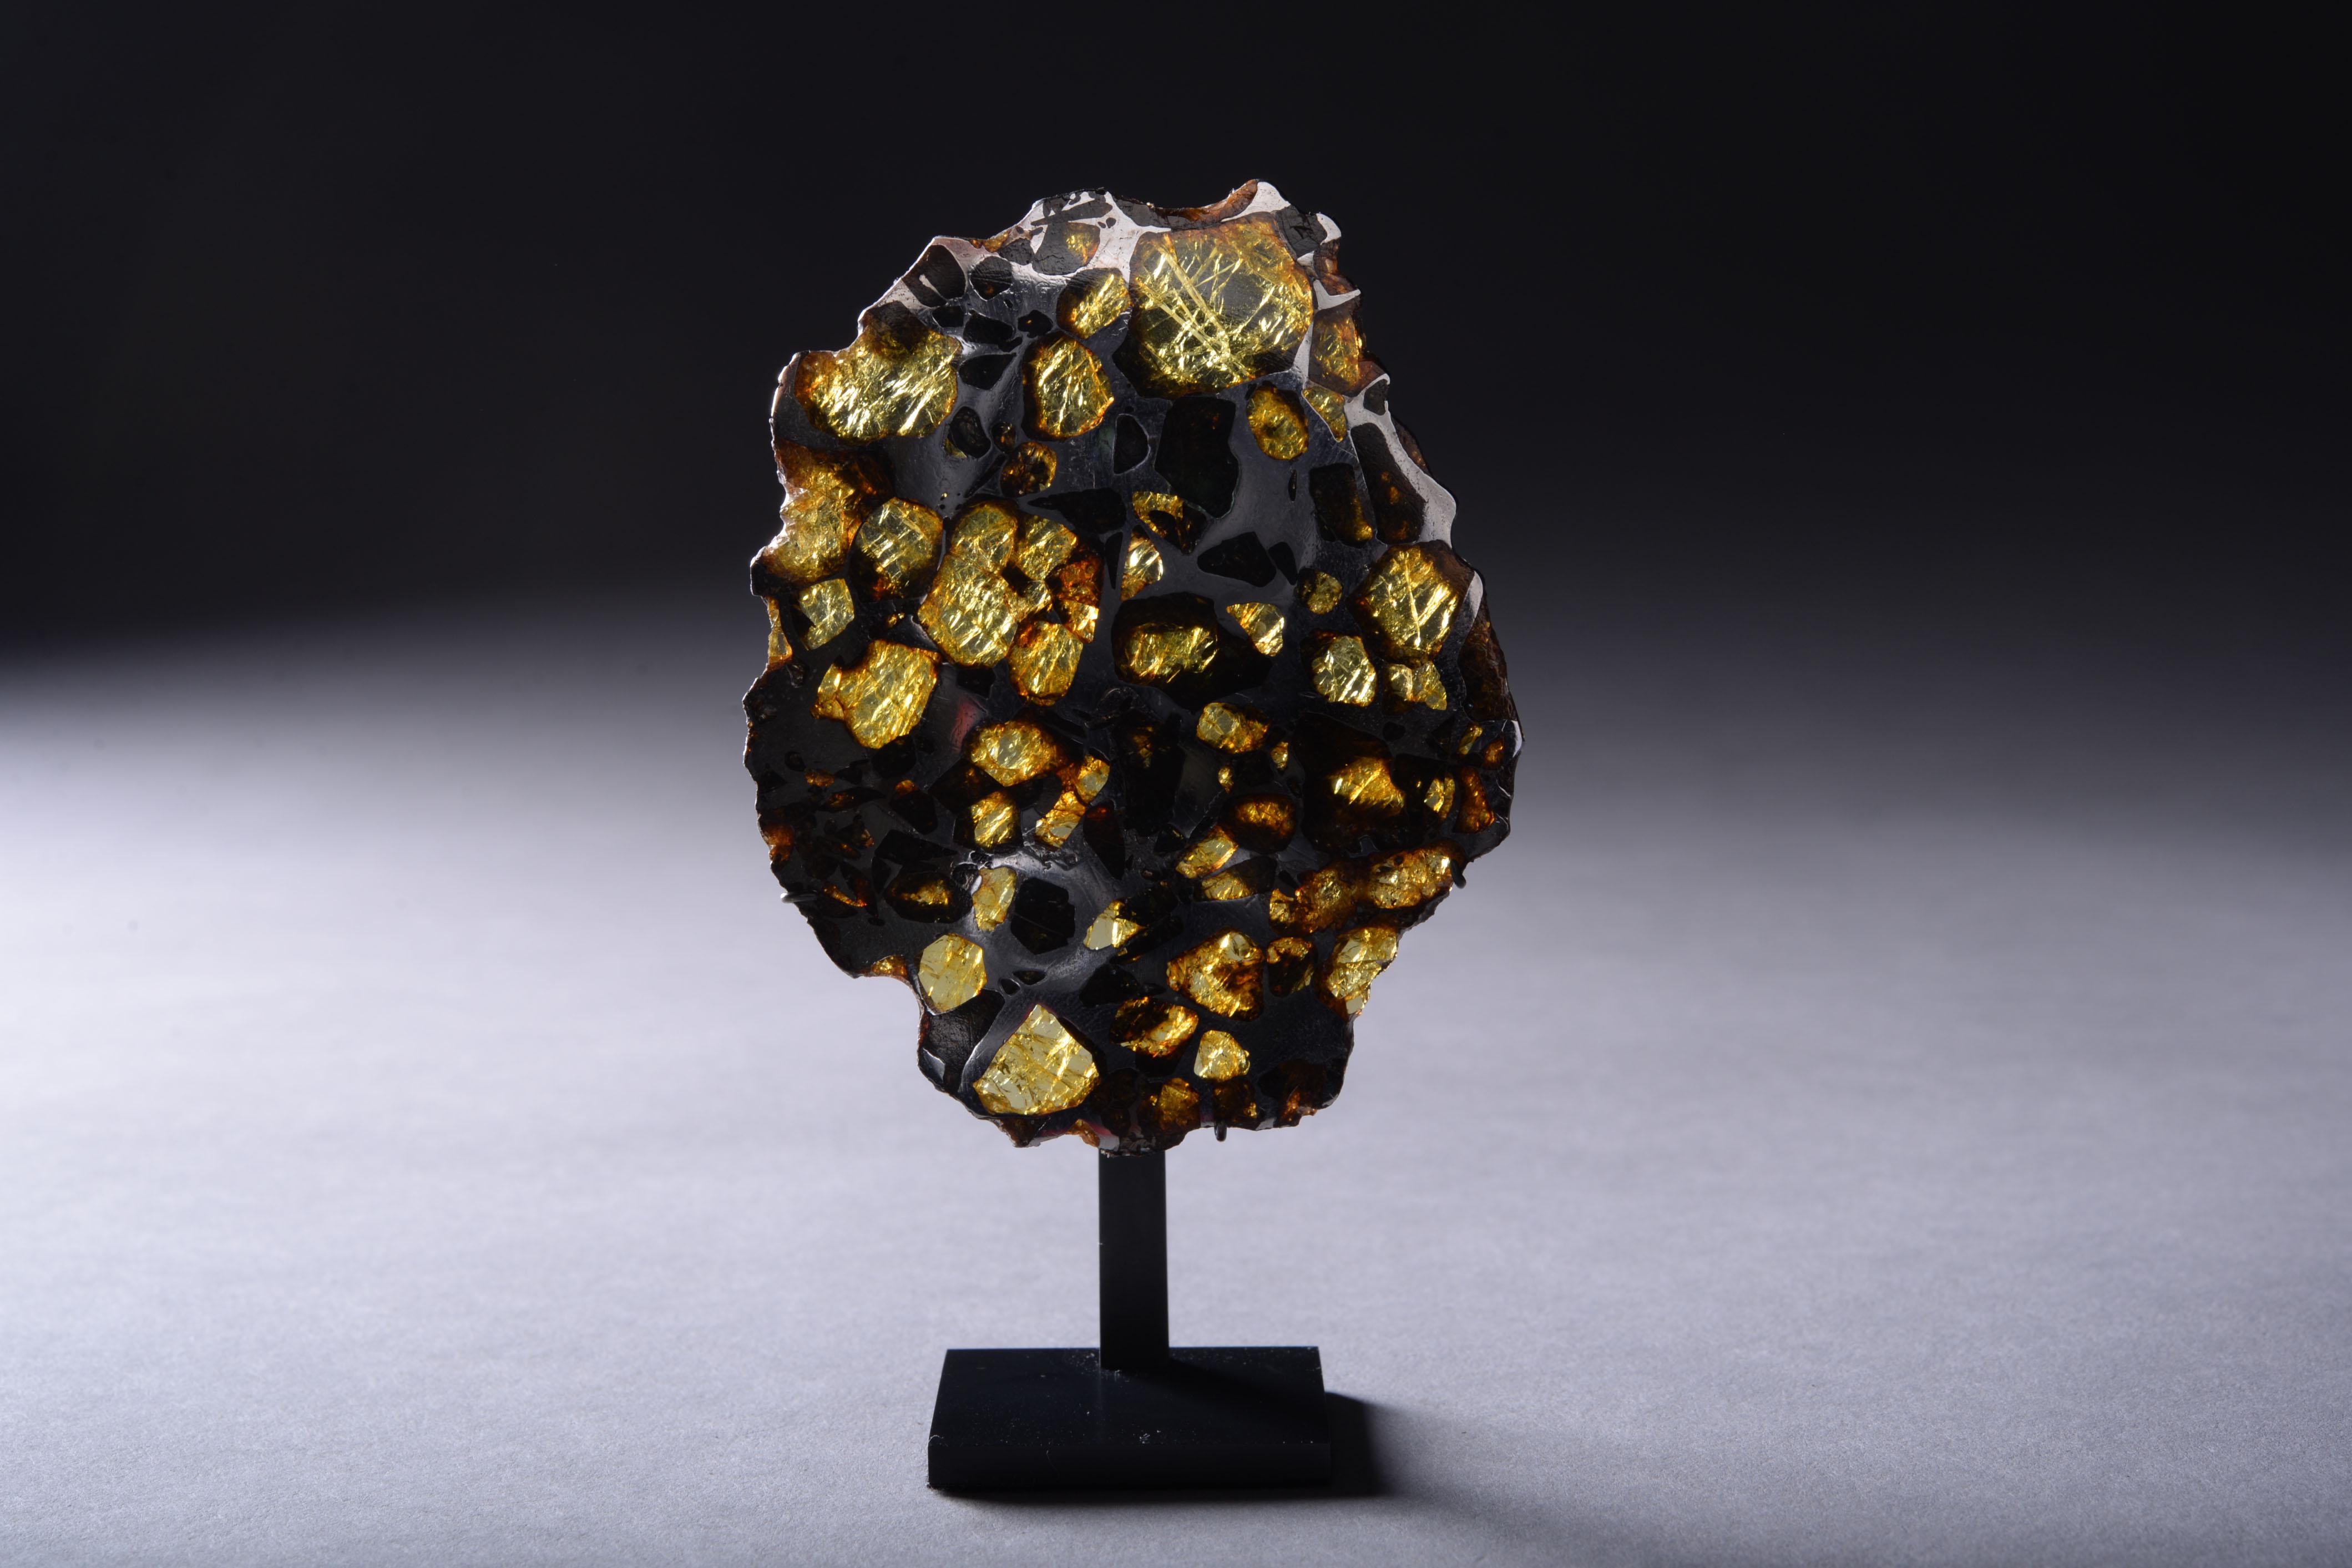 Cette coupe transversale complète de la météorite d'Imilac a été préparée pour révéler des gemmes chatoyantes d'olivine et de péridot enchâssées dans une matrice métallique de fer-nickel. Le magnifique motif en nid d'abeille illustré ici est